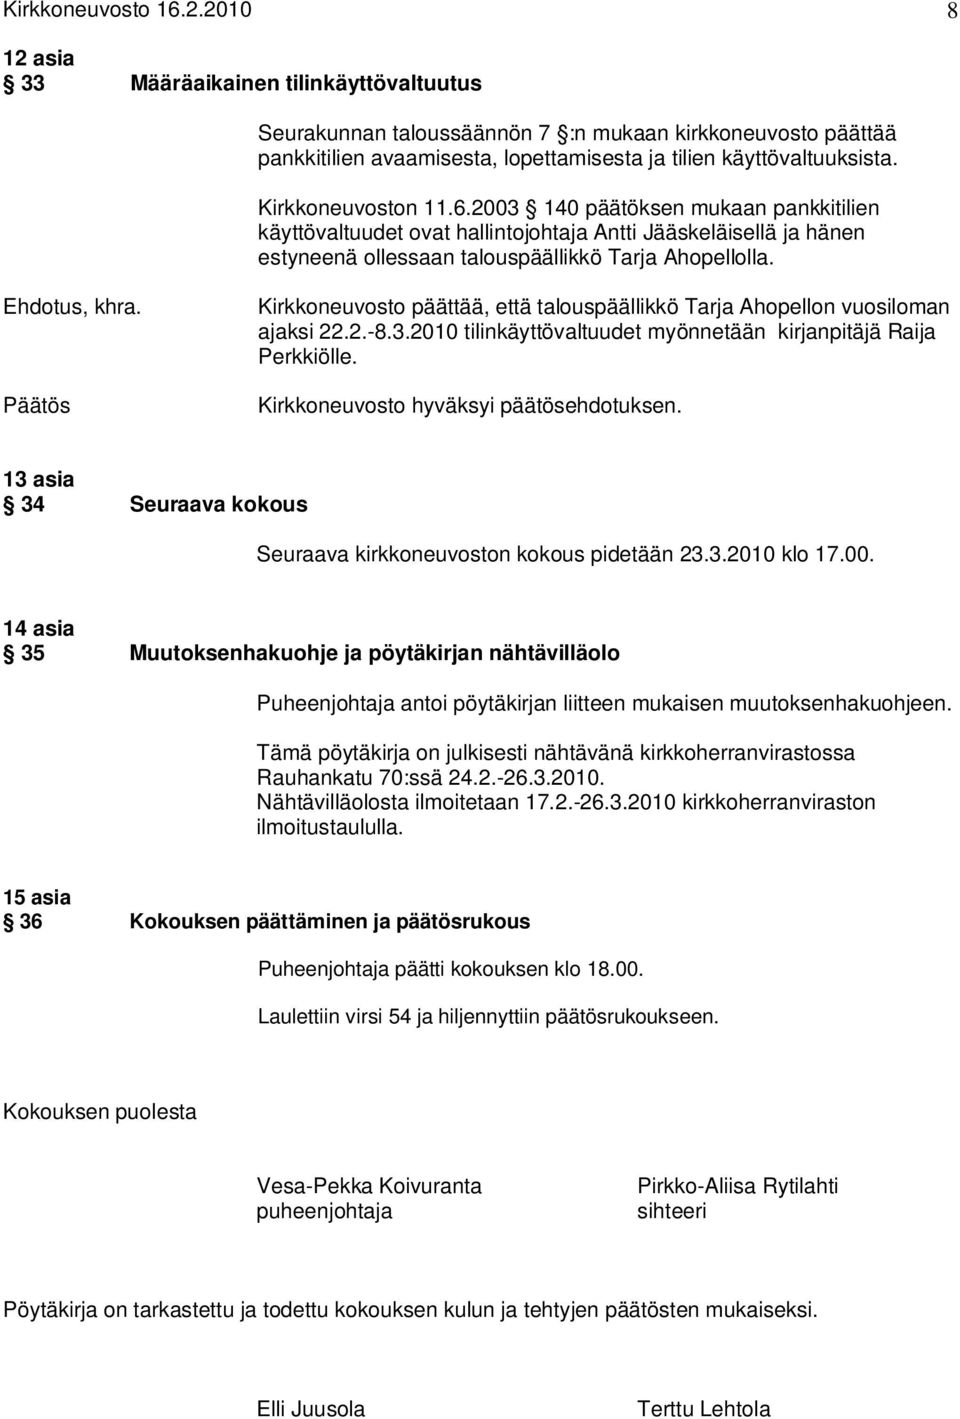 Kirkkoneuvoston 11.6.2003 140 päätöksen mukaan pankkitilien käyttövaltuudet ovat hallintojohtaja Antti Jääskeläisellä ja hänen estyneenä ollessaan talouspäällikkö Tarja Ahopellolla. Ehdotus, khra.